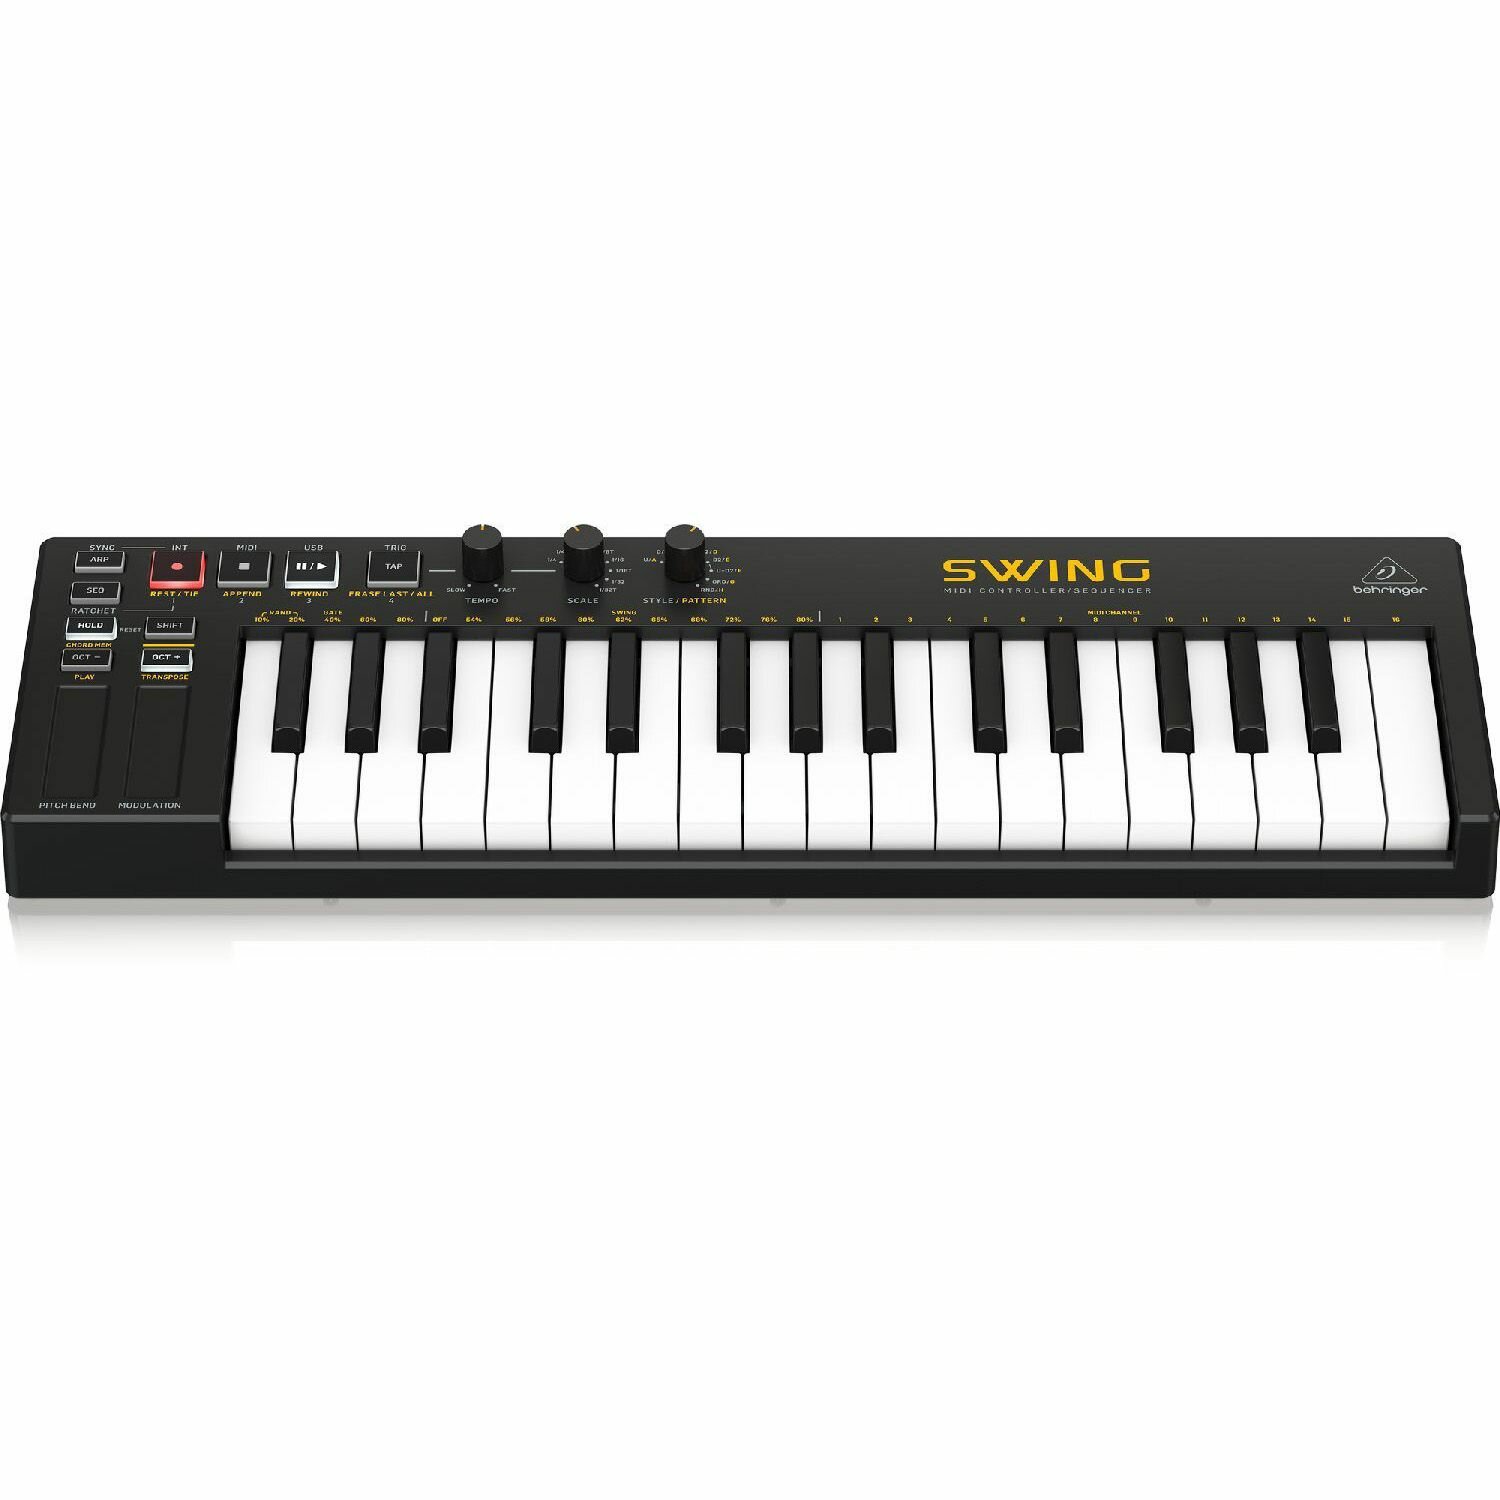 MIDI-клавиатура BEHRINGER SWING